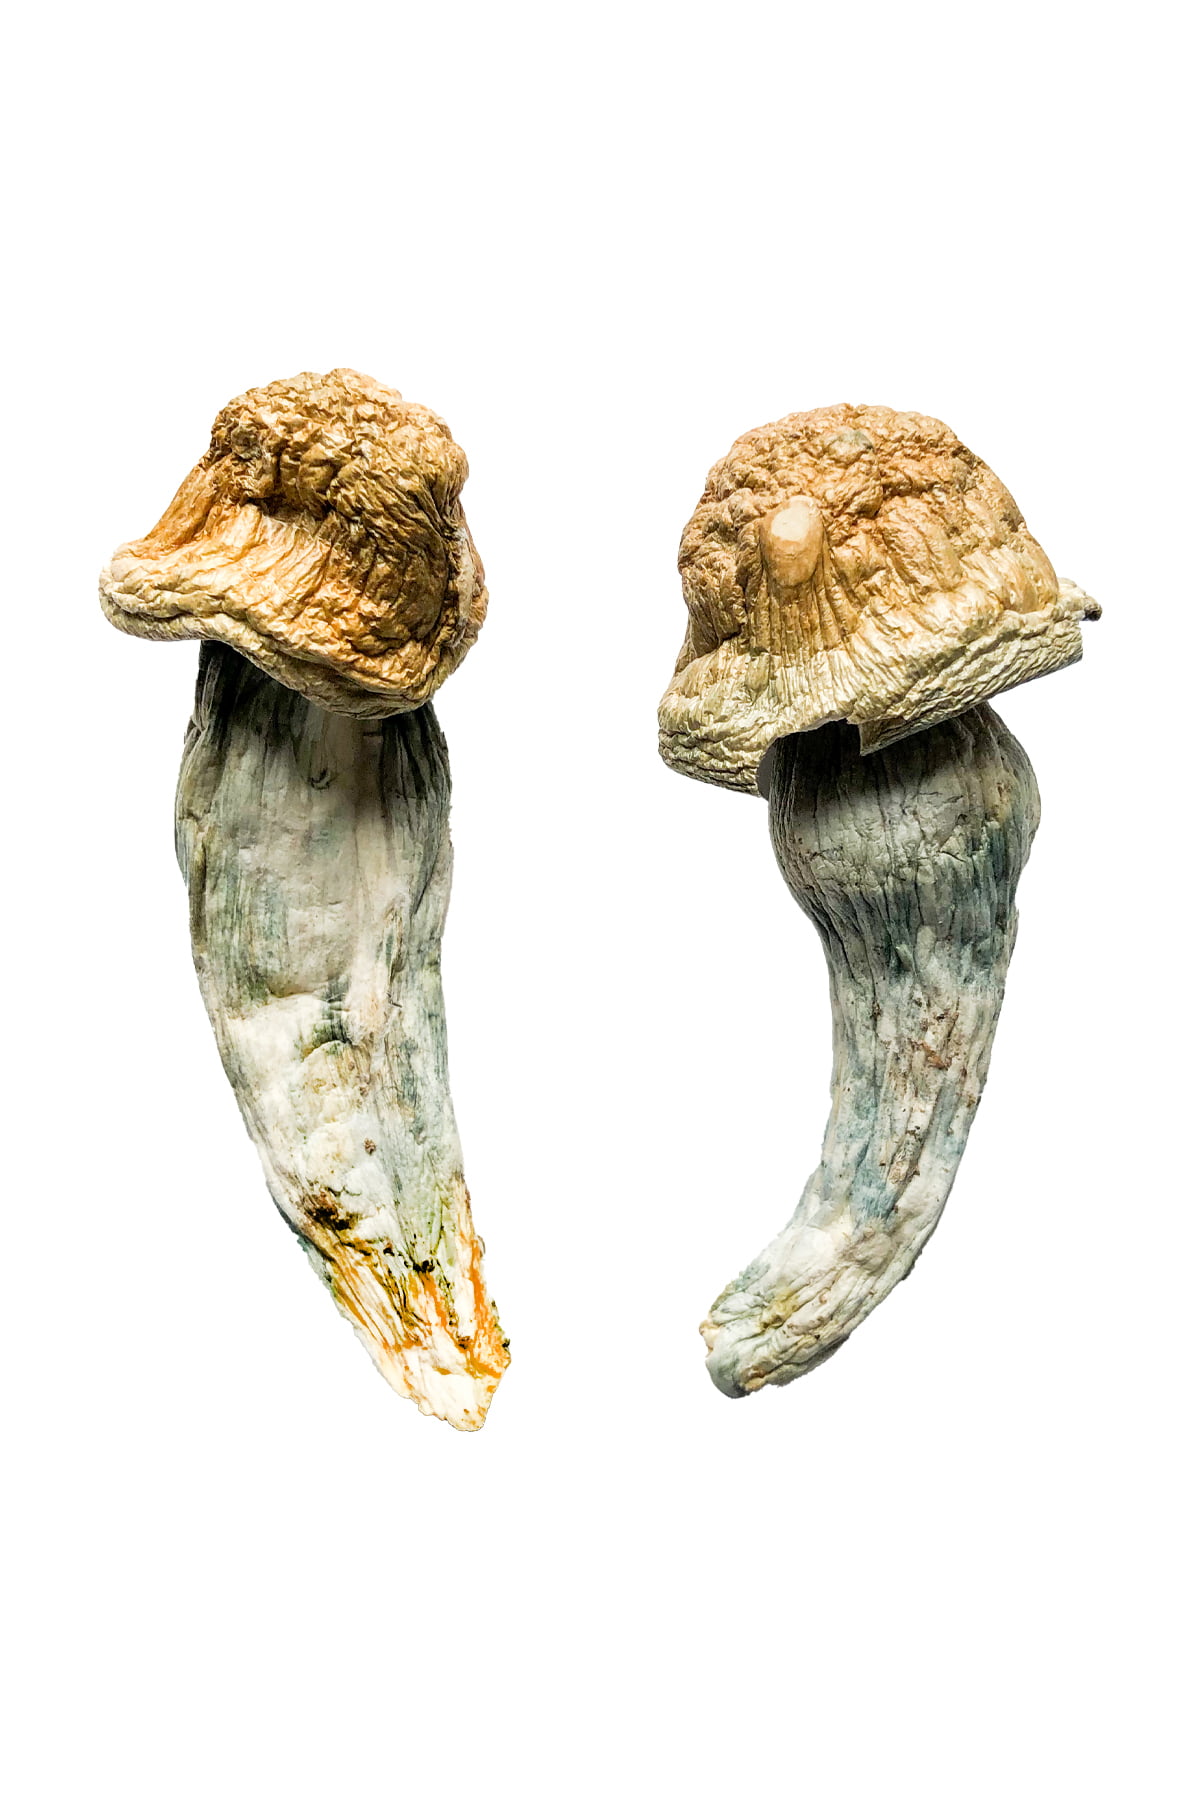 Penis Envy XL Magic Mushrooms